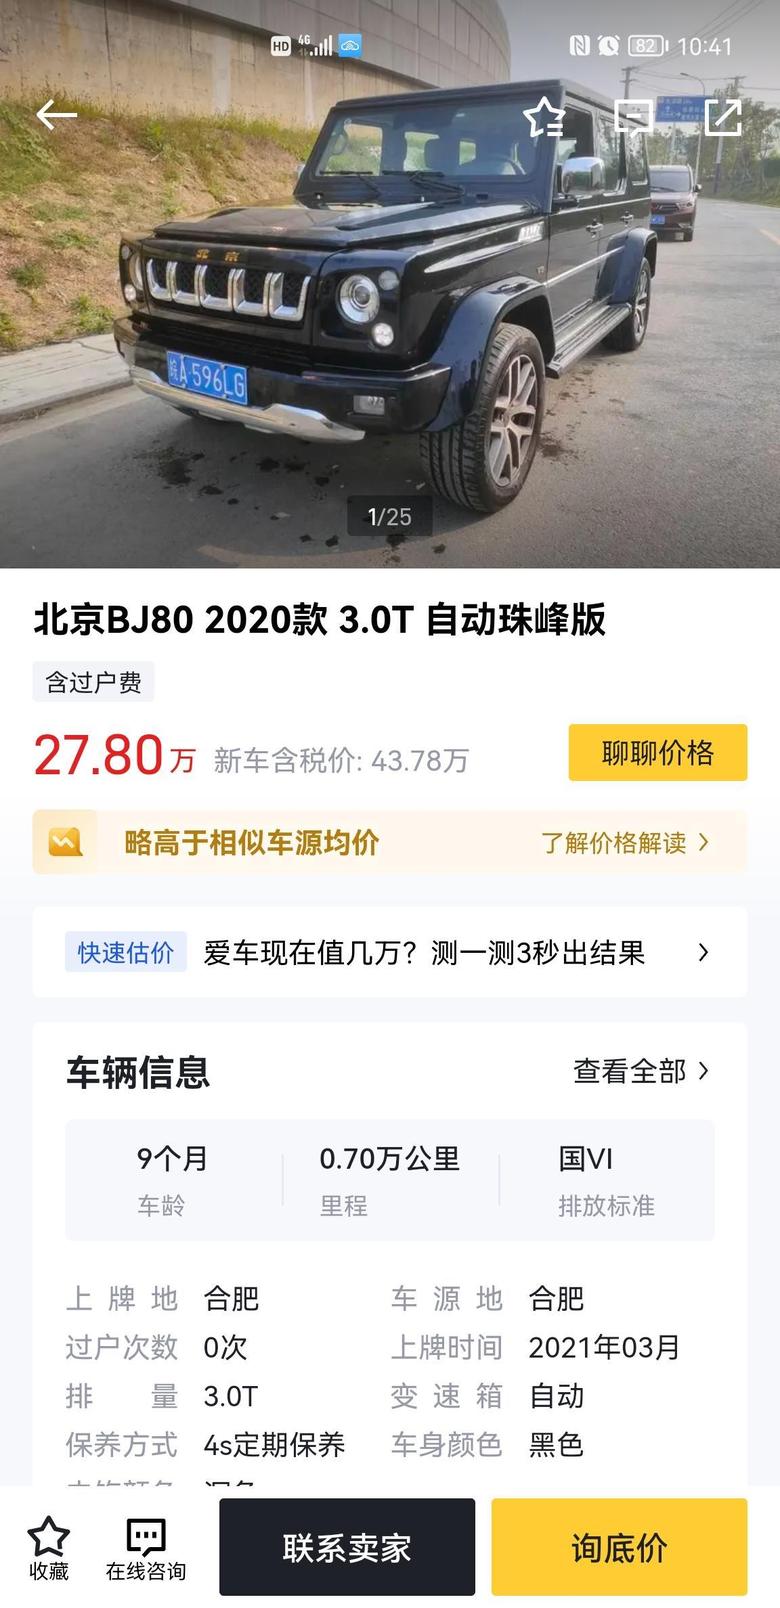 北京bj80刚才看了这台车，感觉价格可以接受，也聊了下，说是四儿子老板的，不知道可信度多高